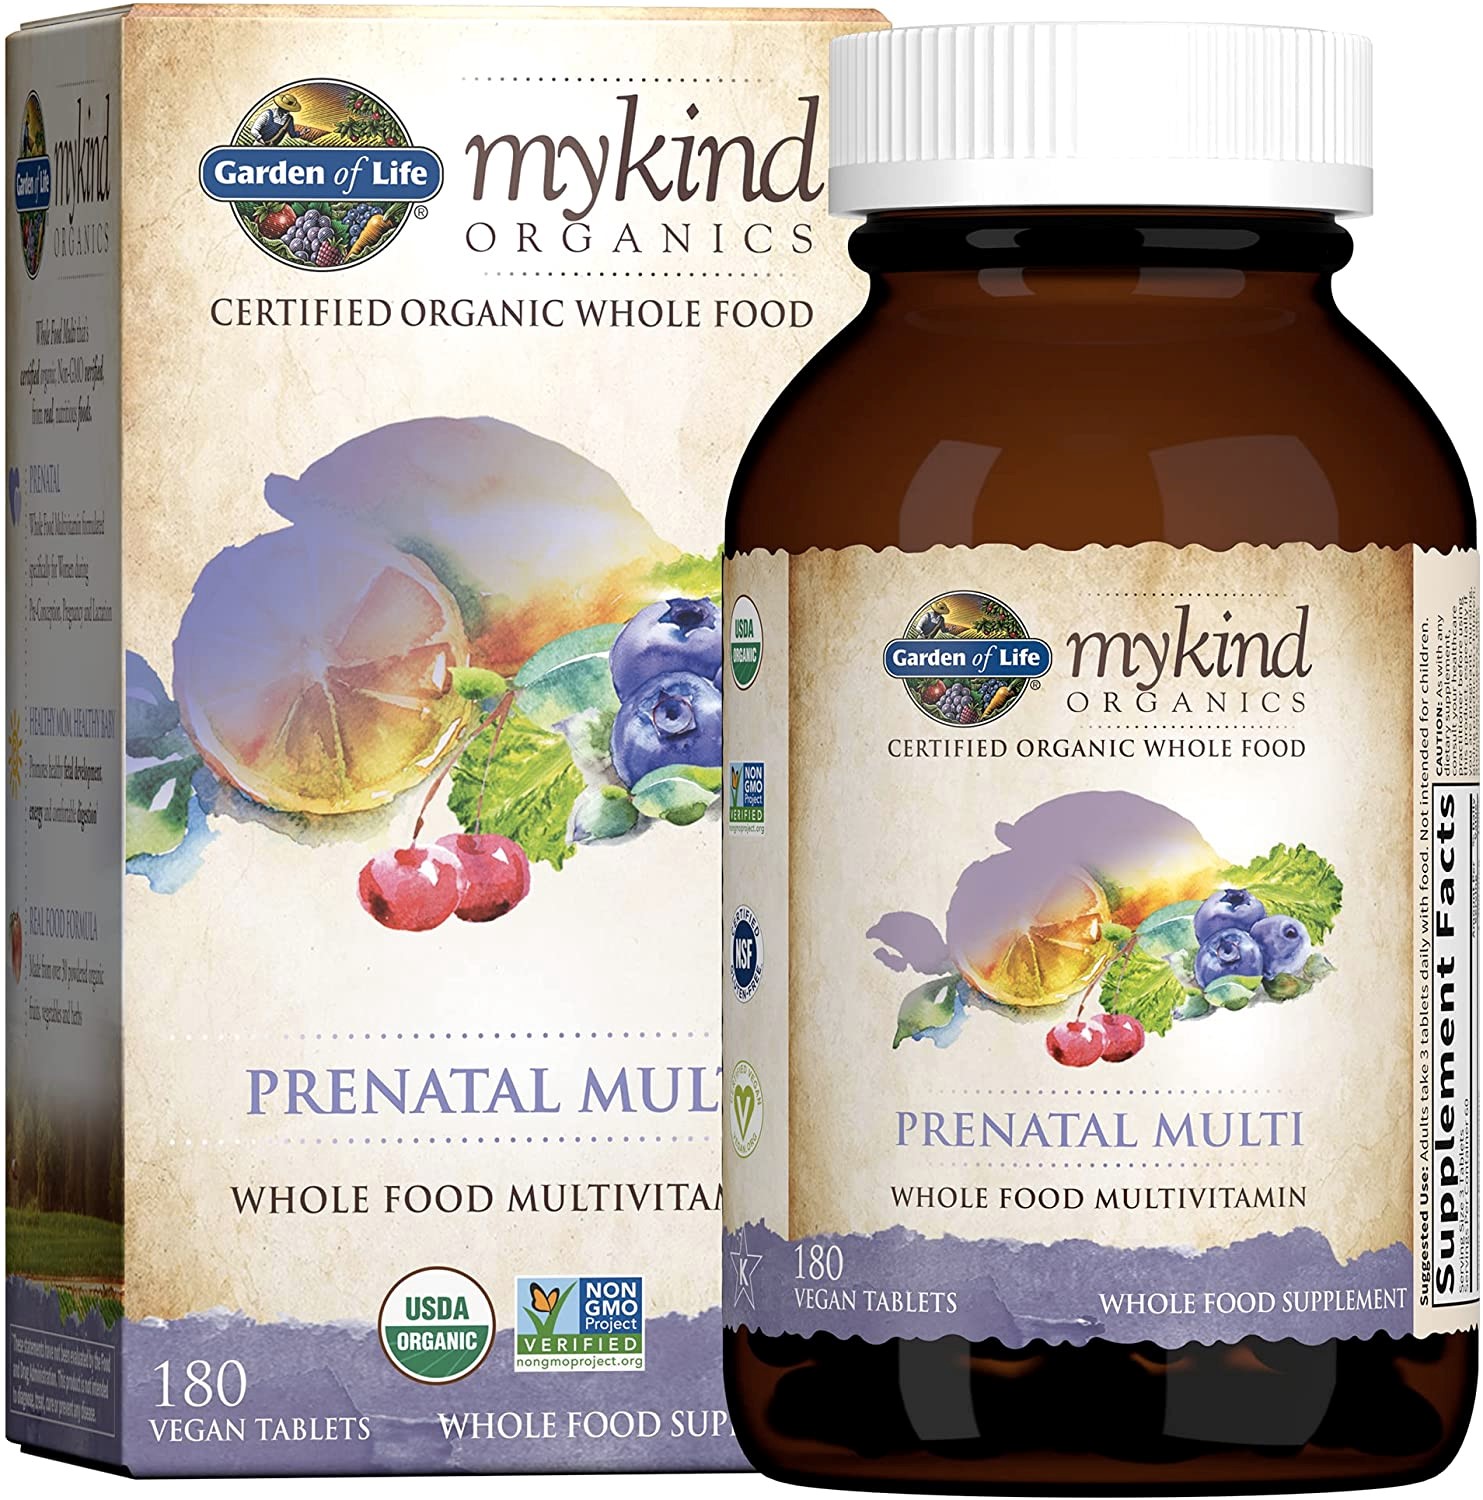 organic prenatal vitamins